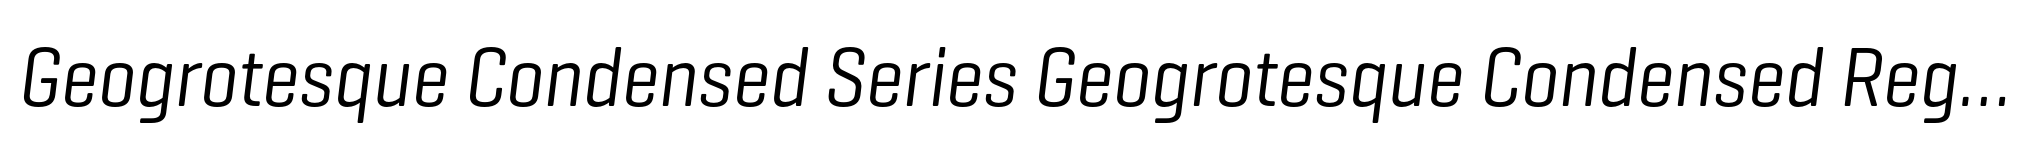 Geogrotesque Condensed Series Geogrotesque Condensed Regular Italic image